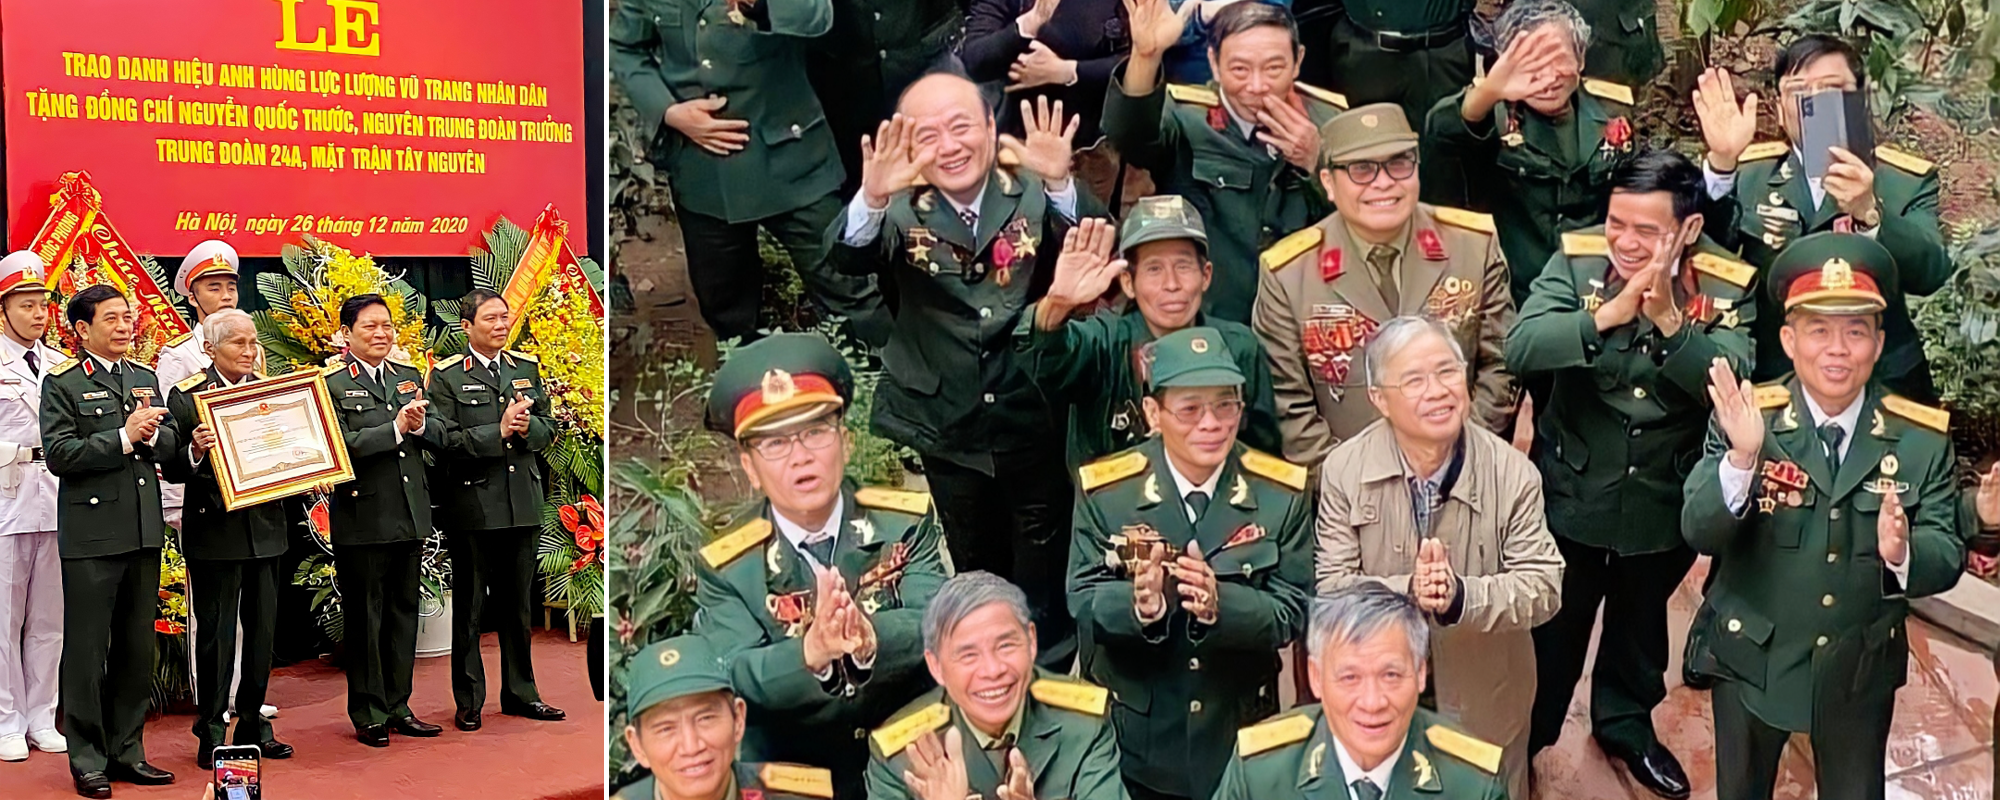 Hình ảnh đồng đội đến chúc mừng Trung tướng Nguyễn Quốc Thước nhận danh hiệu Anh hùng LLVT nhân dân. Ảnh: Tư liệu